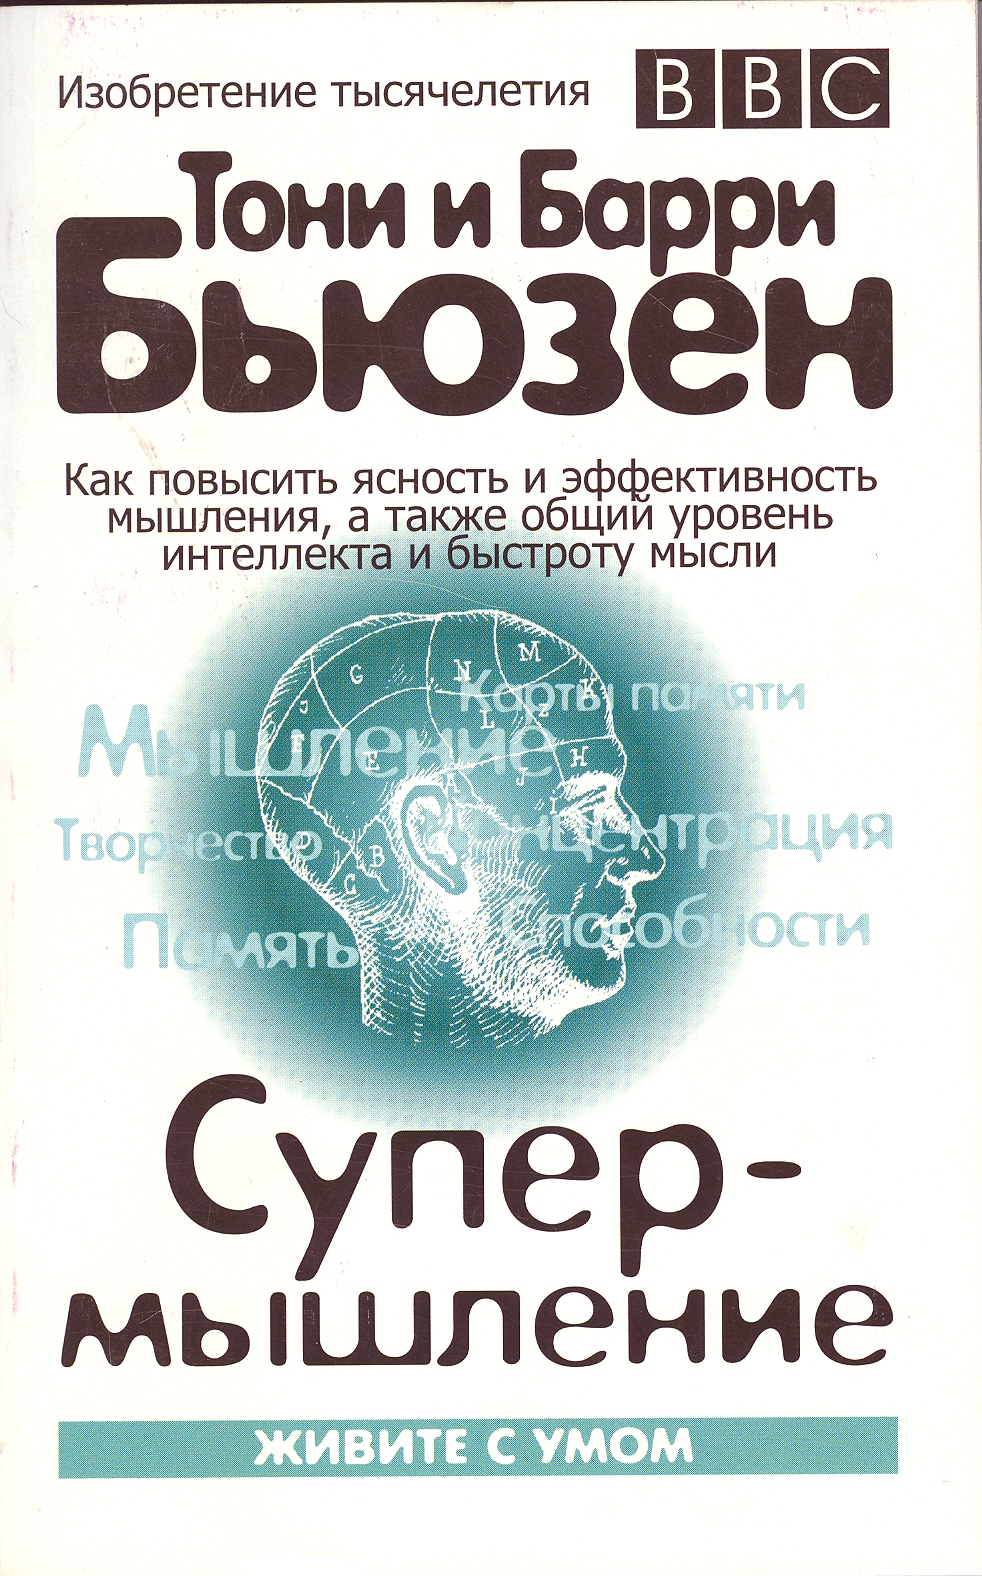 Обложка книги "Супермышление"